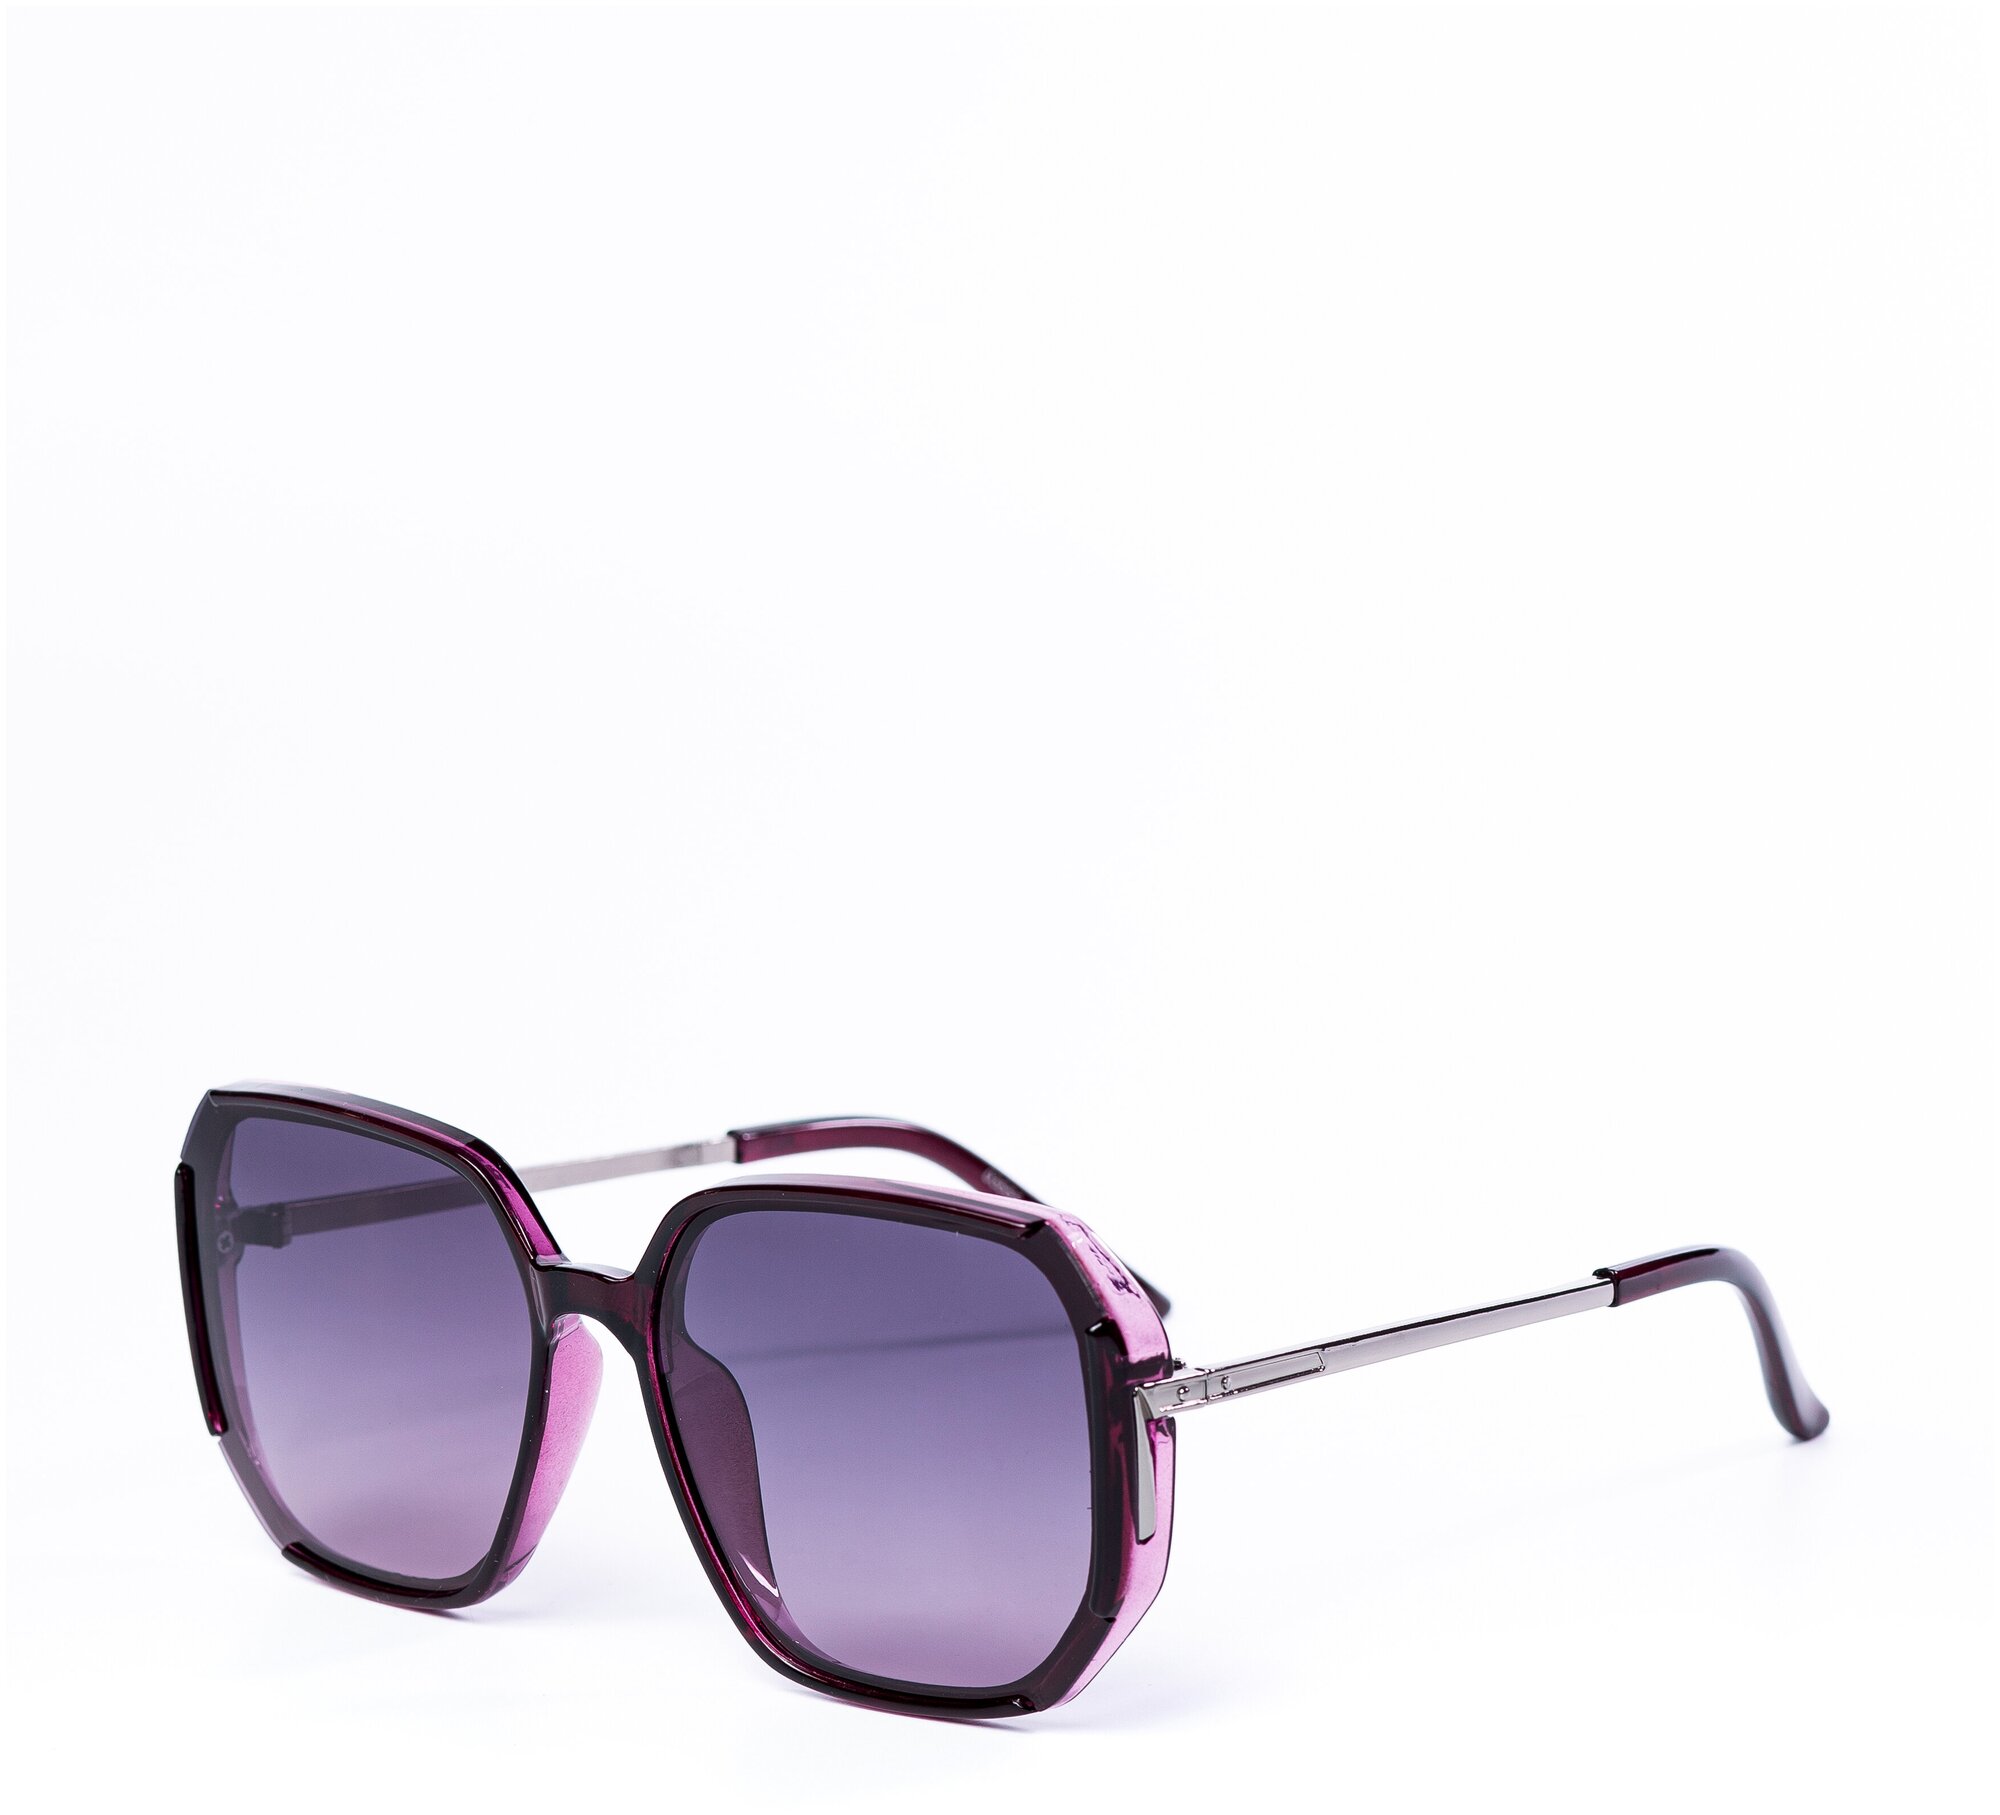 Солнцезащитные очки женские / Оправа квадратная / Стильные очки / Ультрафиолетовый фильтр / Защита UV400 / Чехол в подарок / Темные очки 200422548